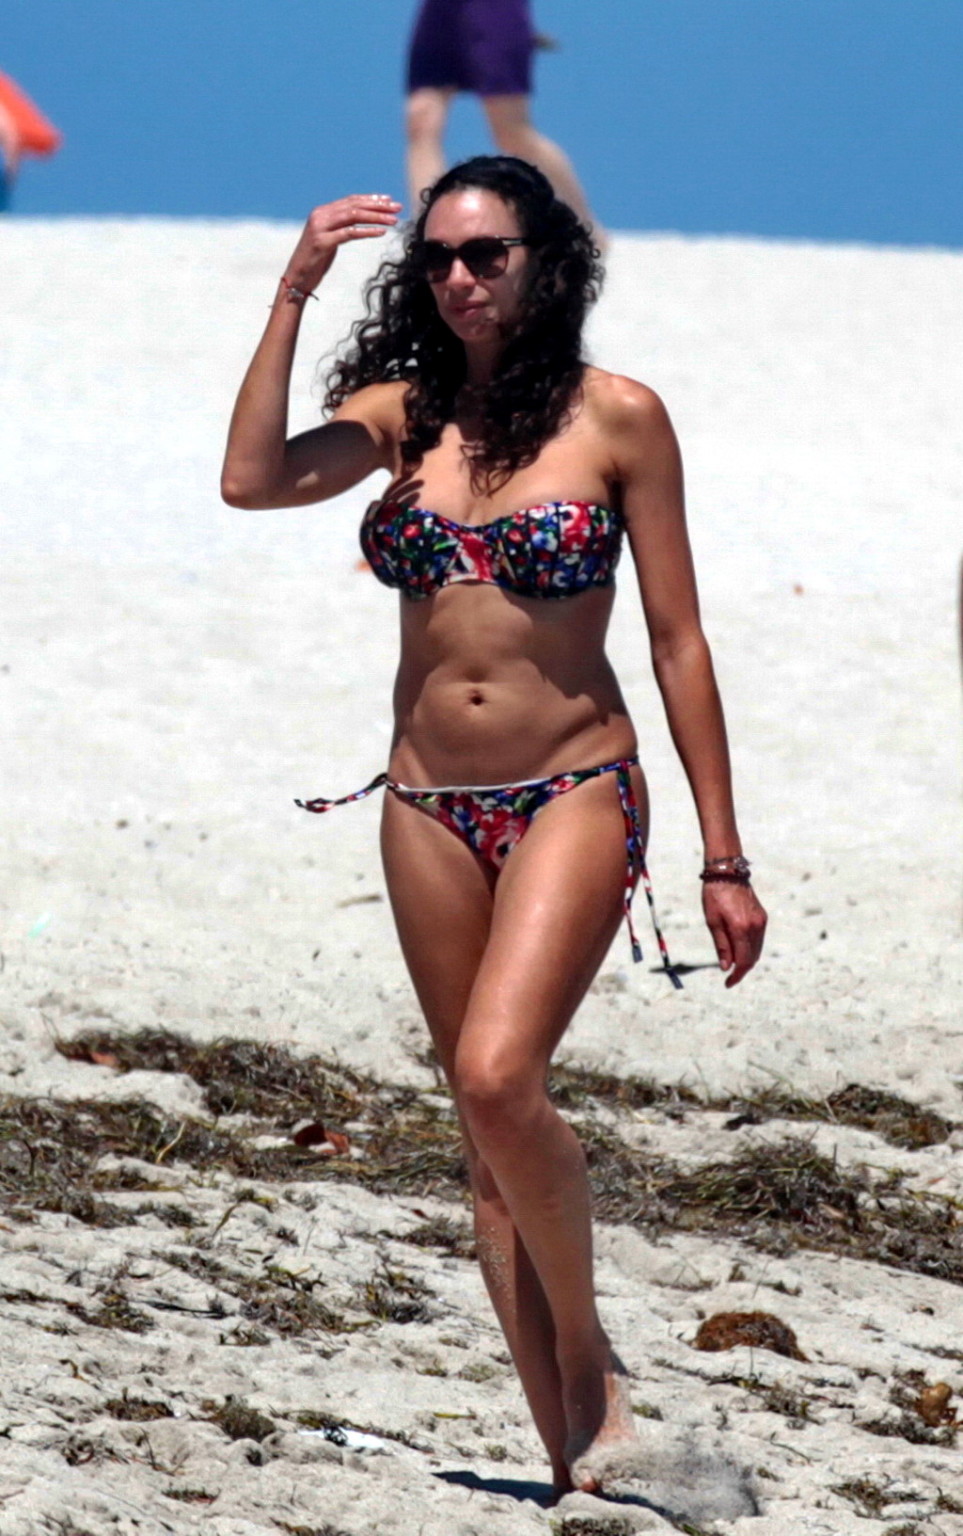 Lilly becker mostrando su cuerpo en bikini en una playa de miami
 #75168273